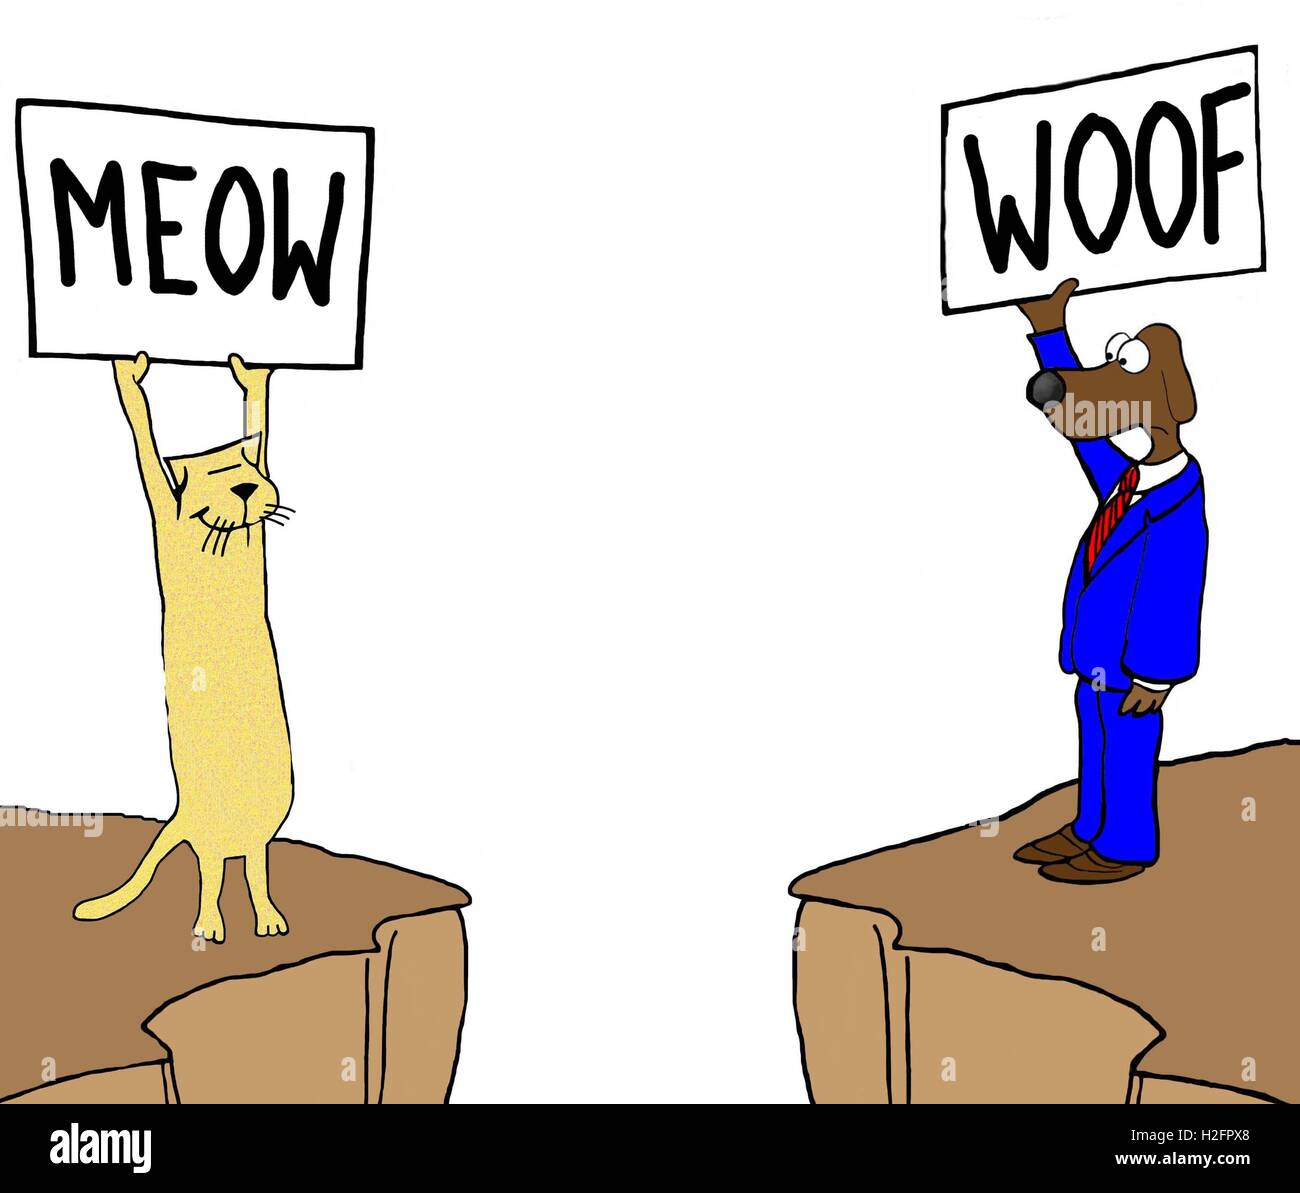 Illustrazione a colori di un gatto e un cane su diverse scogliere Holding firmano che dire 'meow' e 'trama', rispettivamente Foto Stock